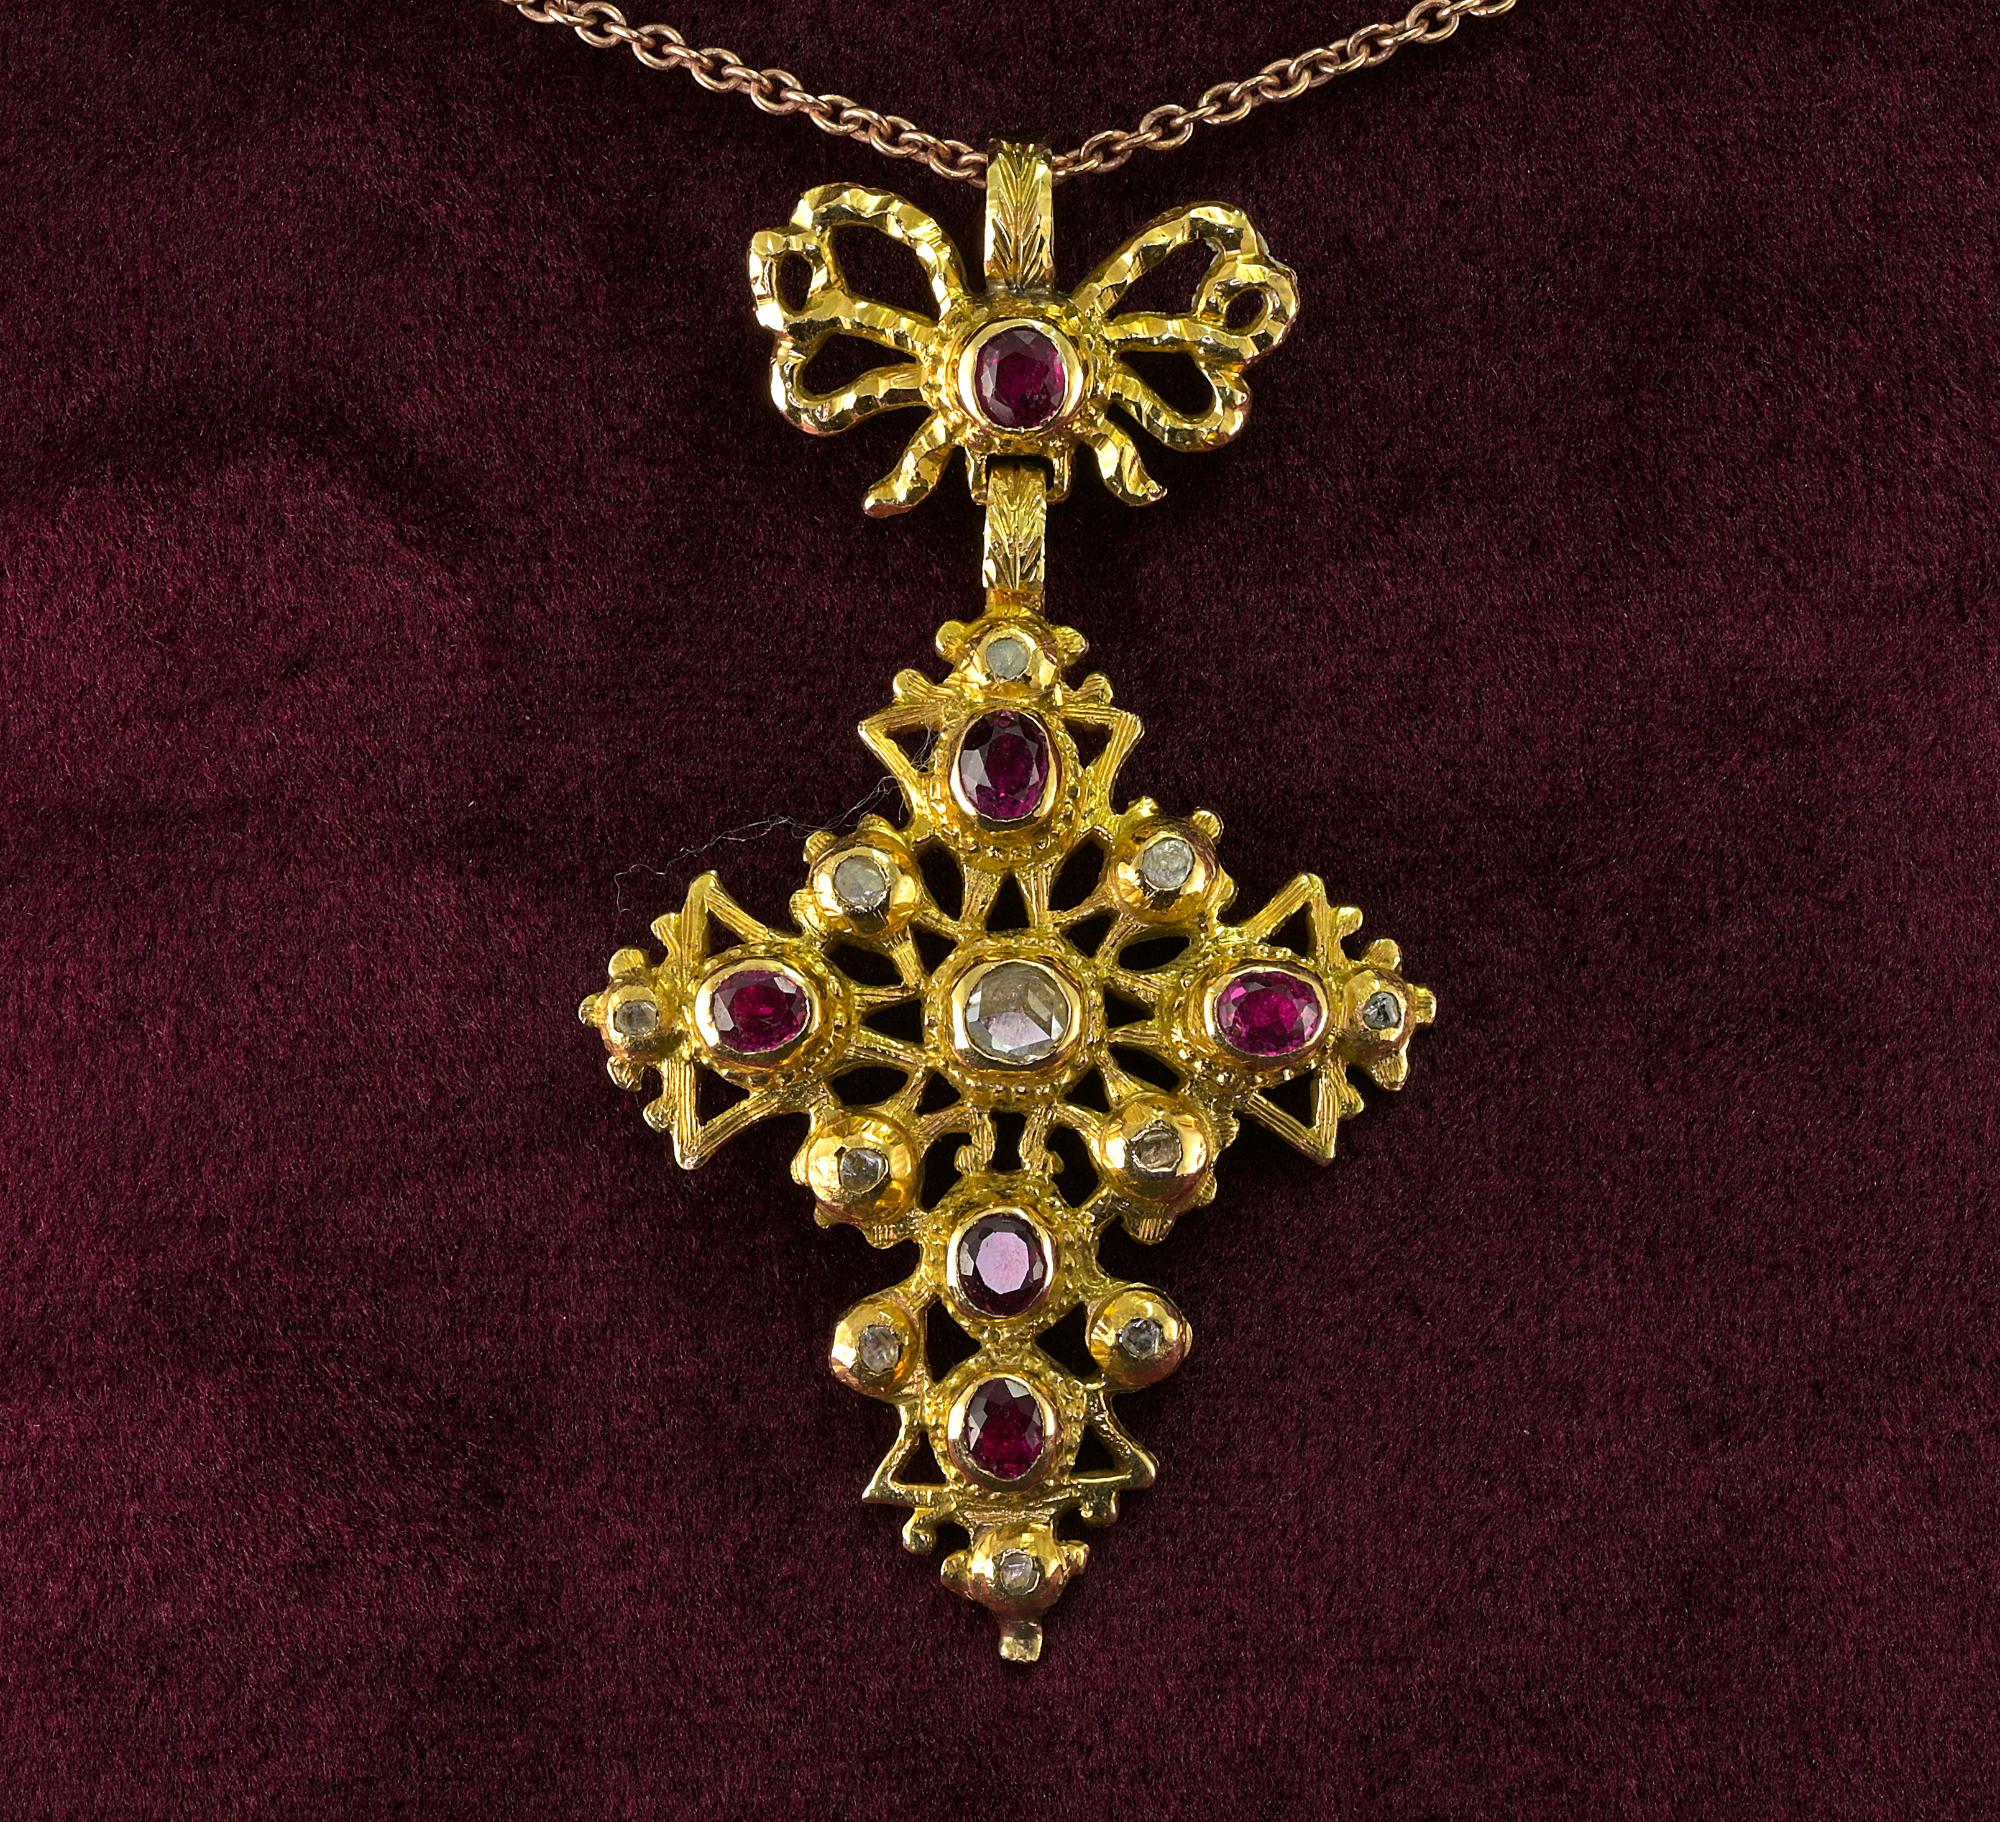 Ce rare pendentif en forme de croix de l'époque géorgienne date de 1770 environ.
Or massif 22 carats, superbe design réalisé avec art, orné de rubis naturels rouge sang de pigeon, que nous estimons à 1,50 carat, et de diamants taillés en rose, dont